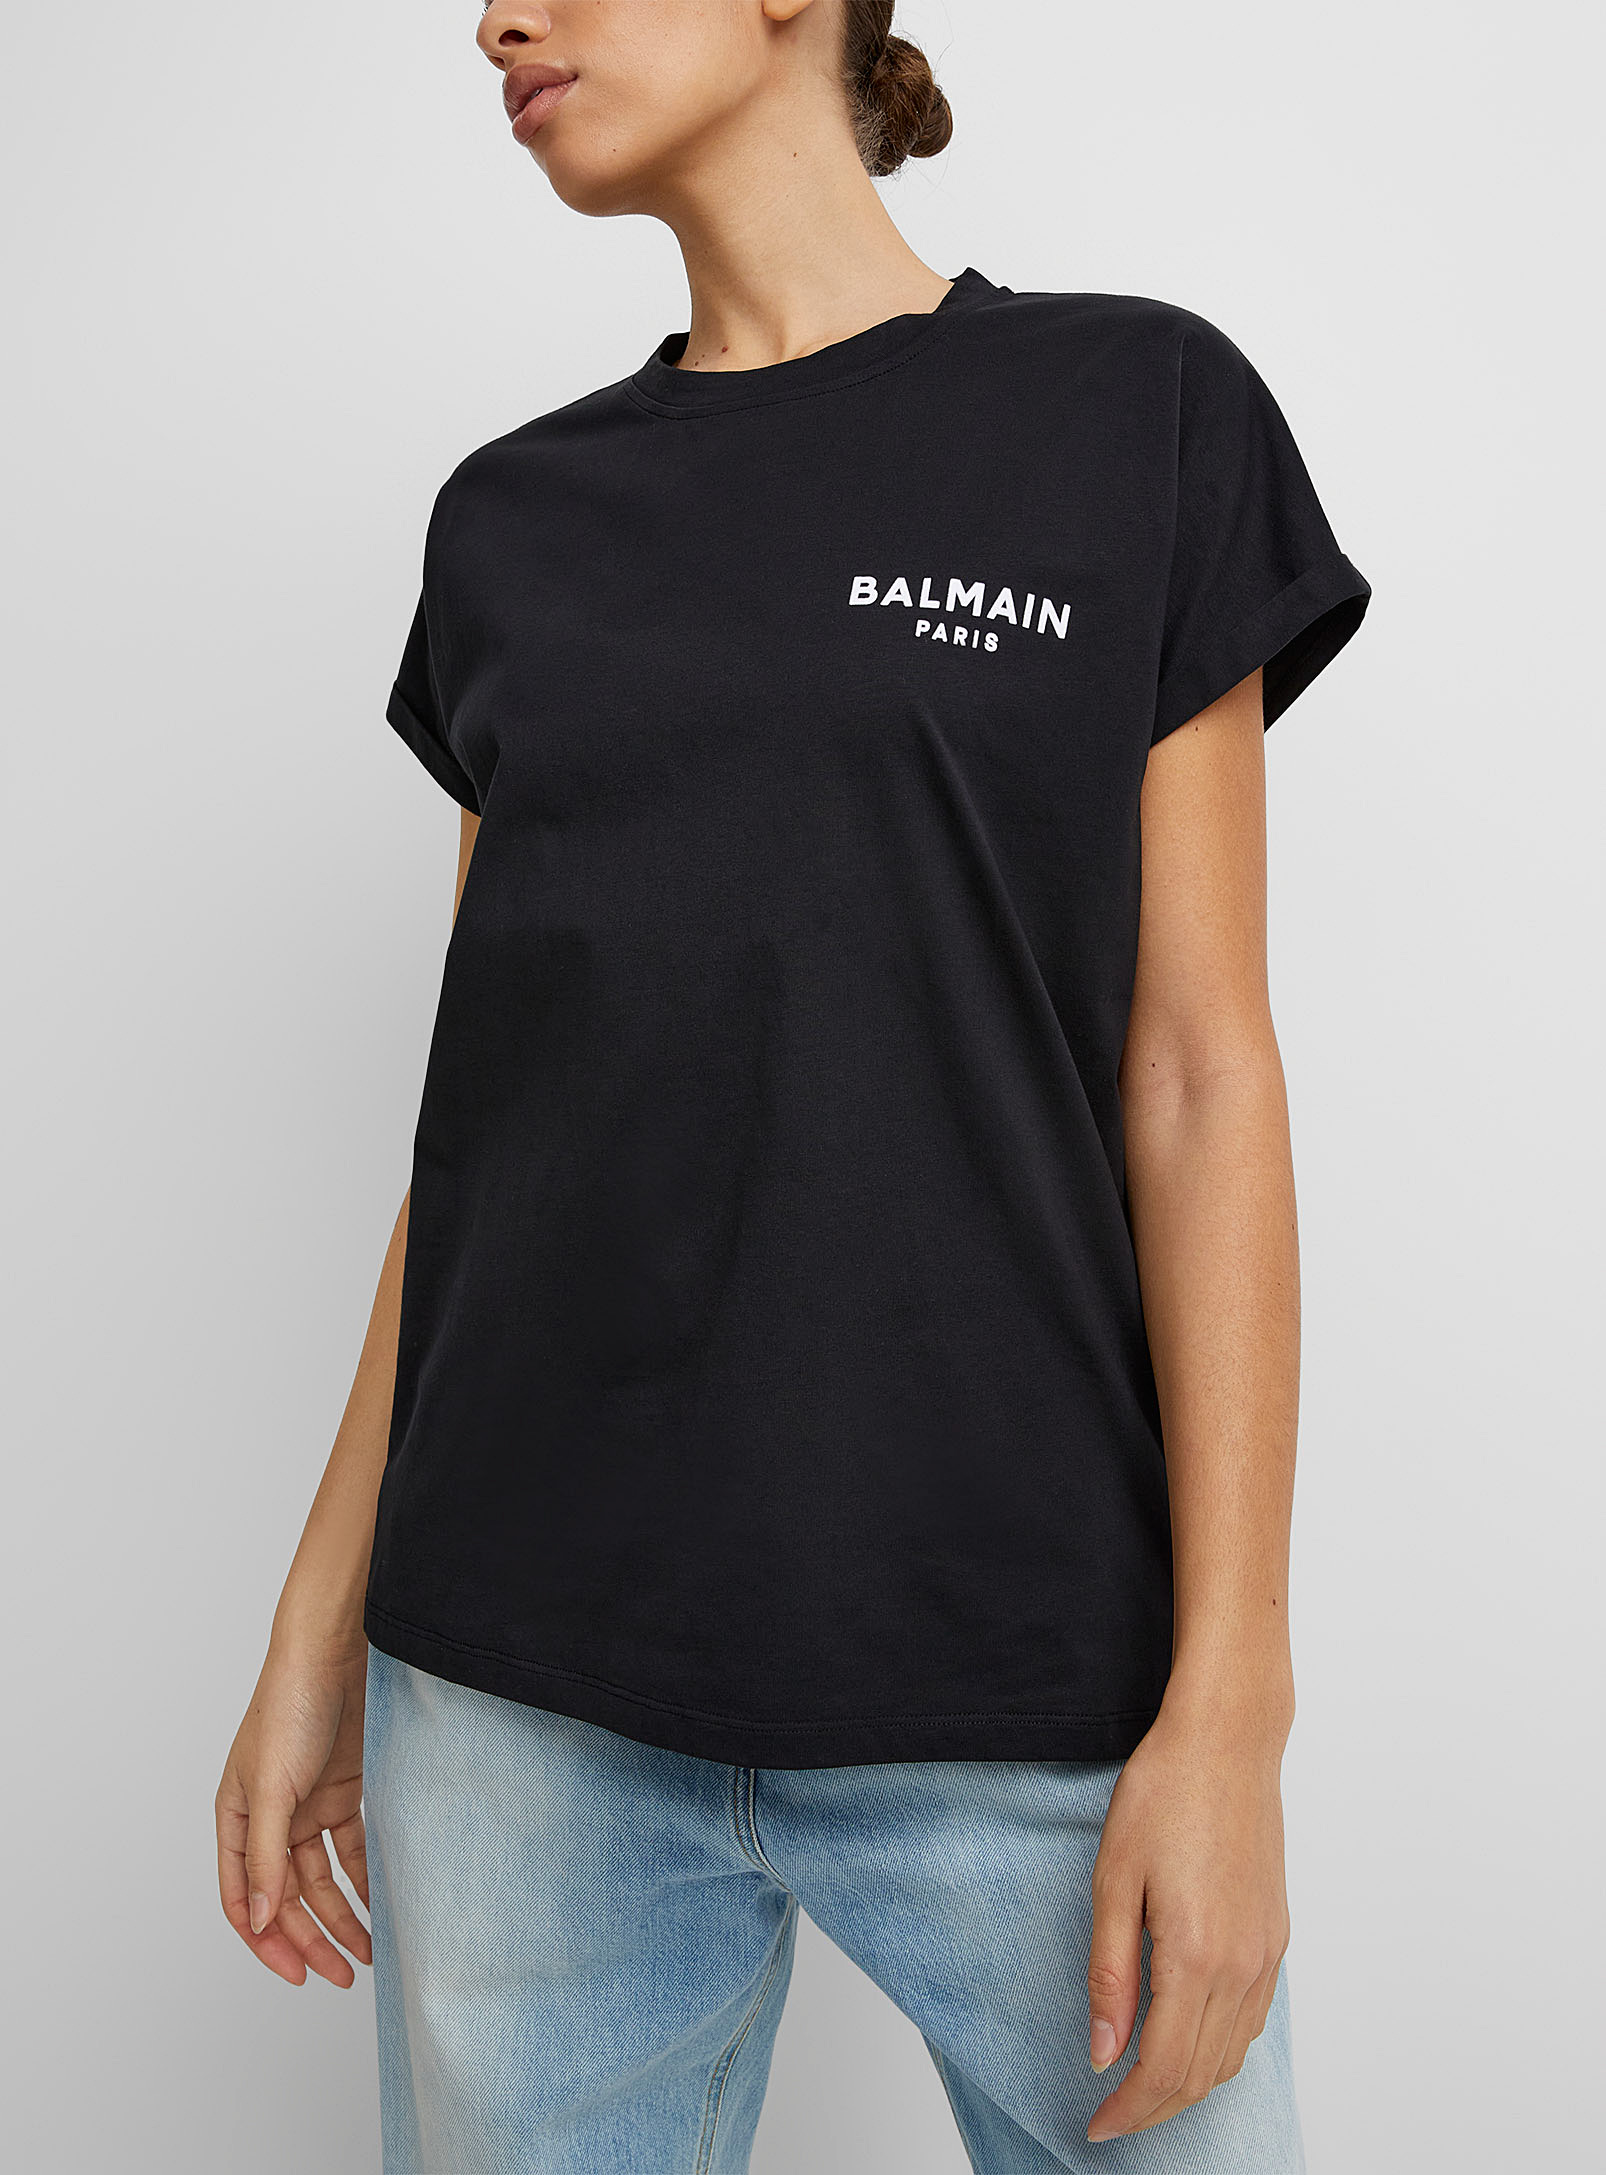 Balmain - Le t-shirt signature